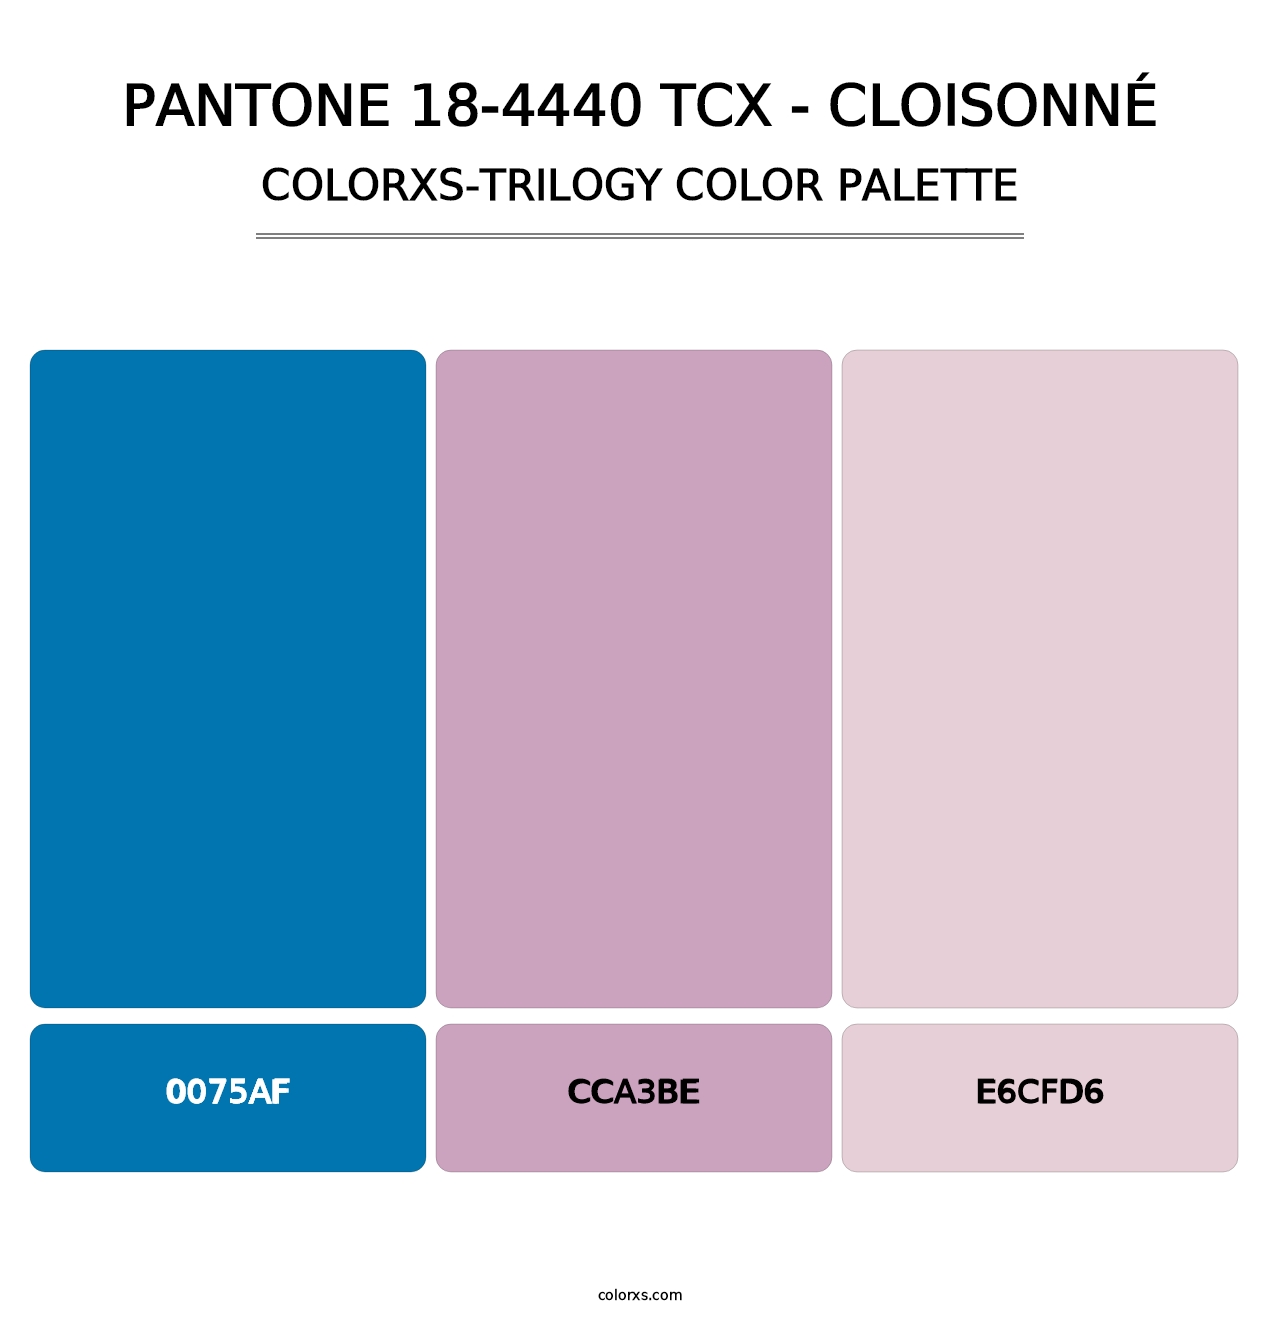 PANTONE 18-4440 TCX - Cloisonné - Colorxs Trilogy Palette